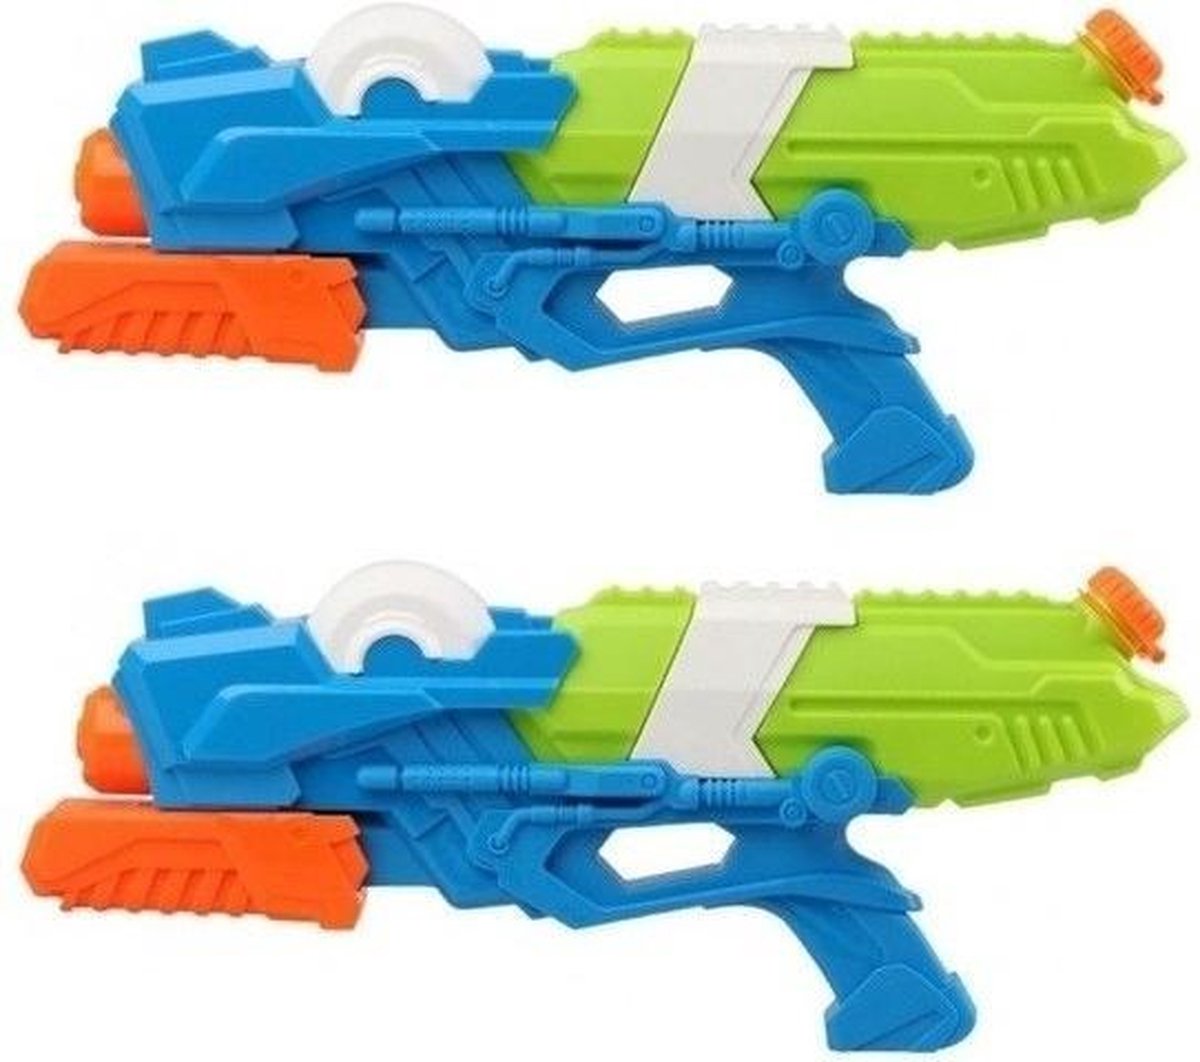 2x Waterpistolen met pomp blauw/groen 41 cm - Speelgoed watergeweren - Waterguns